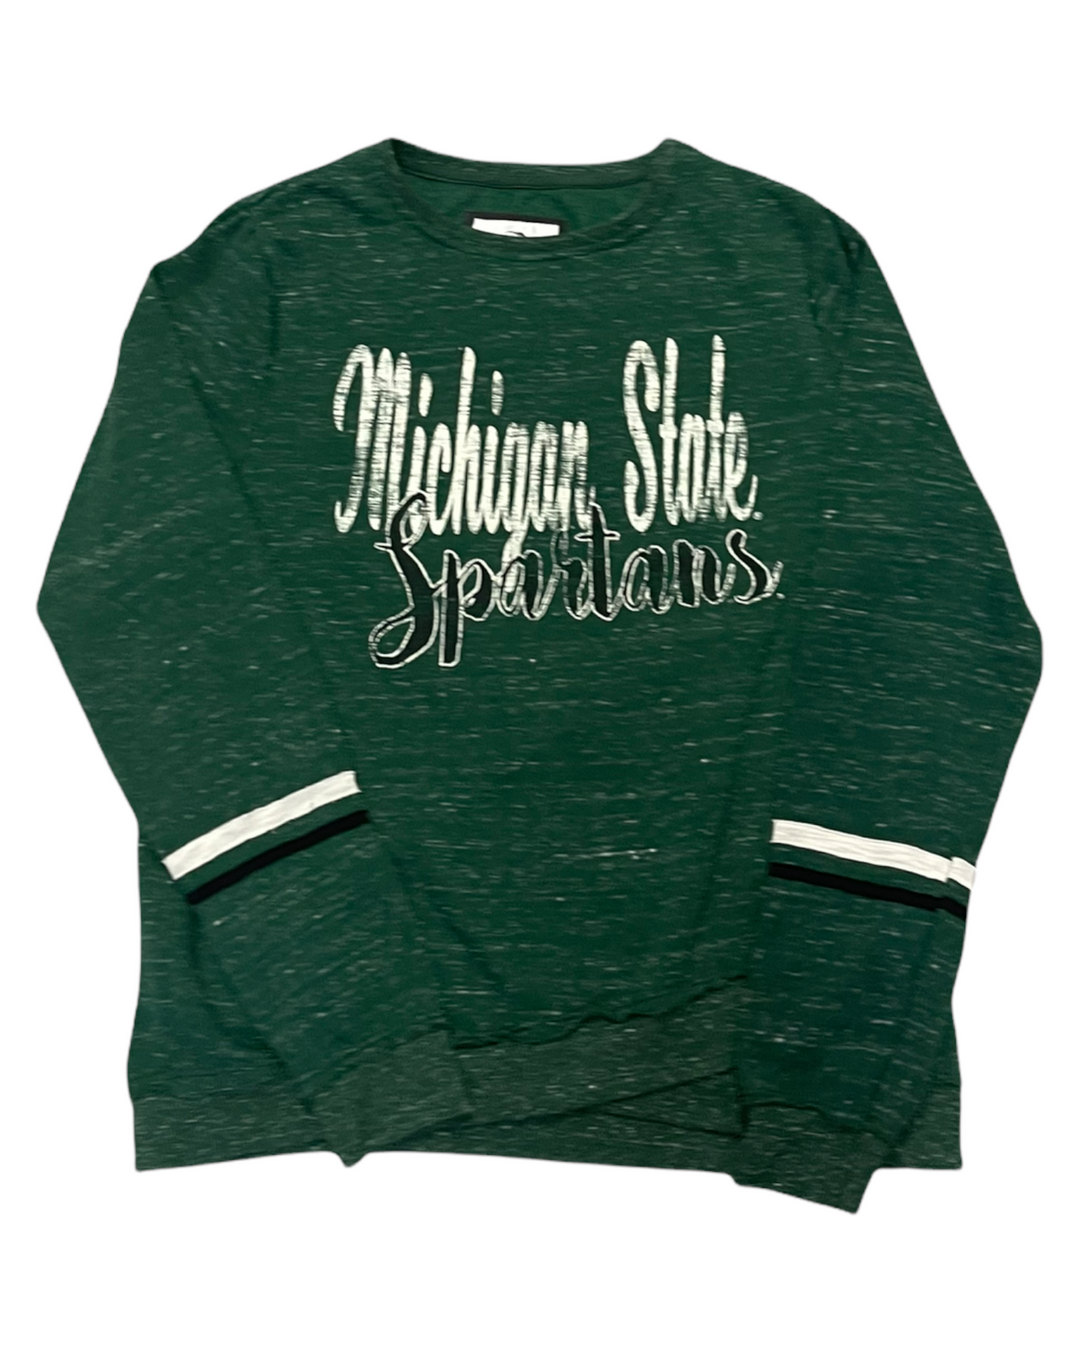 Michigan State Vintage Swearshirt